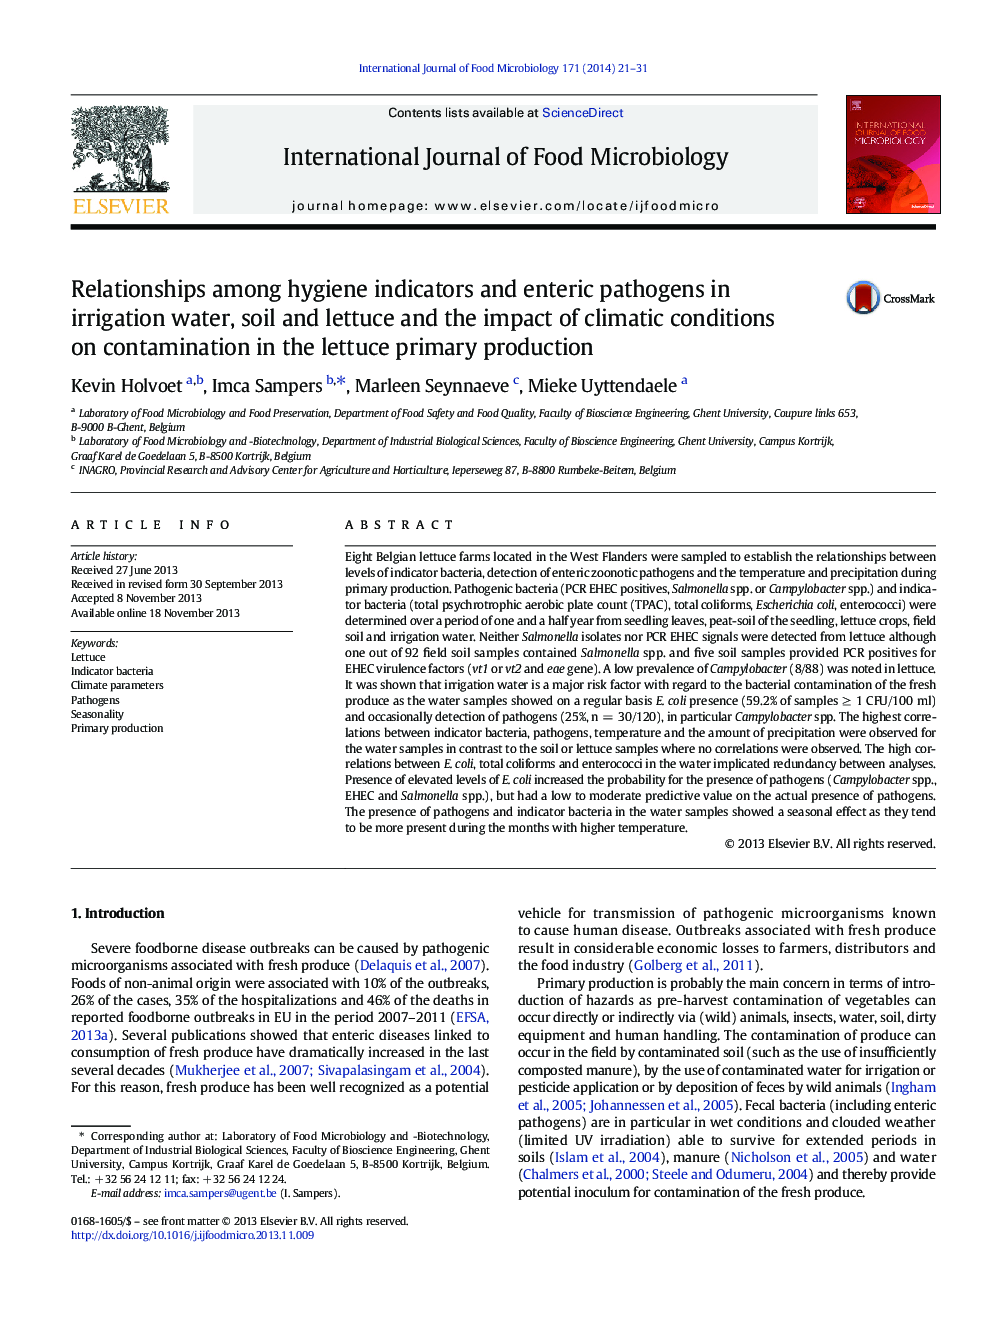 رابطه بین شاخص های بهداشتی و پاتوژن های روده ای در آب، خاک و کاه آبیاری و تأثیر شرایط آب و هوایی بر آلودگی در تولید اولیه کاهو 